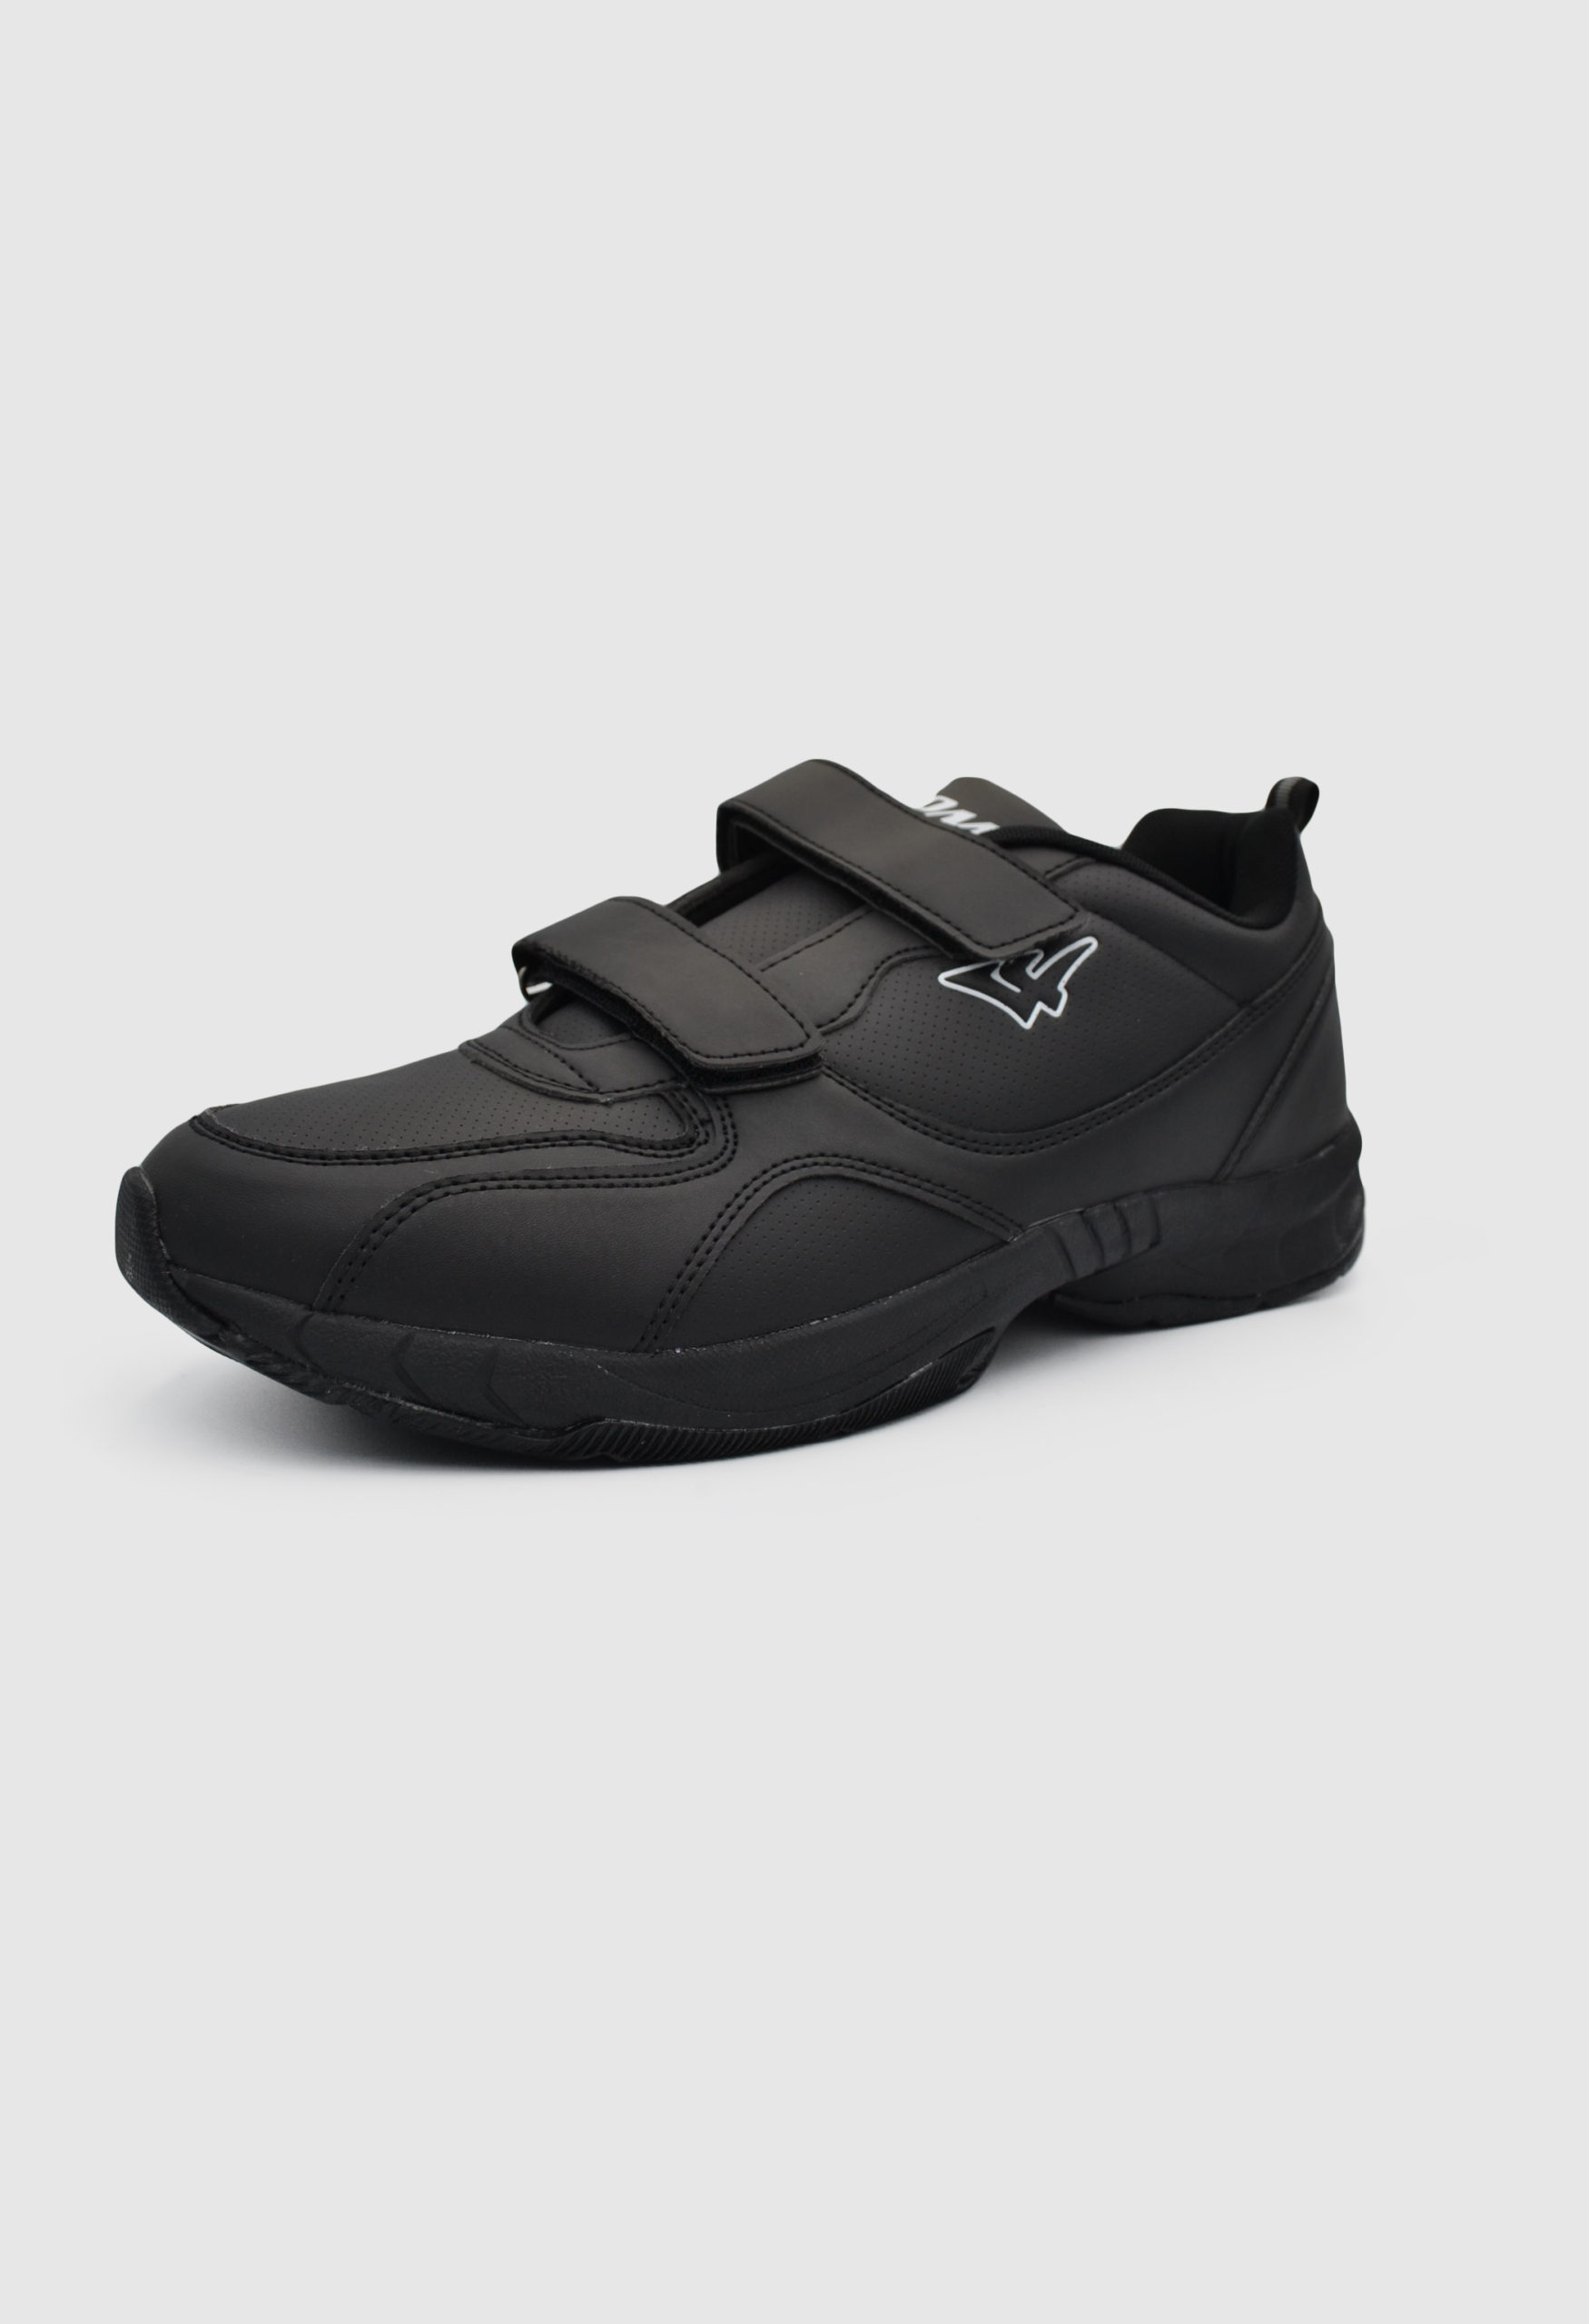 Ανδρικά Sneakers Μαύρο / 7615496 ΑΘΛΗΤΙΚΑ & SNEAKERS joya.gr